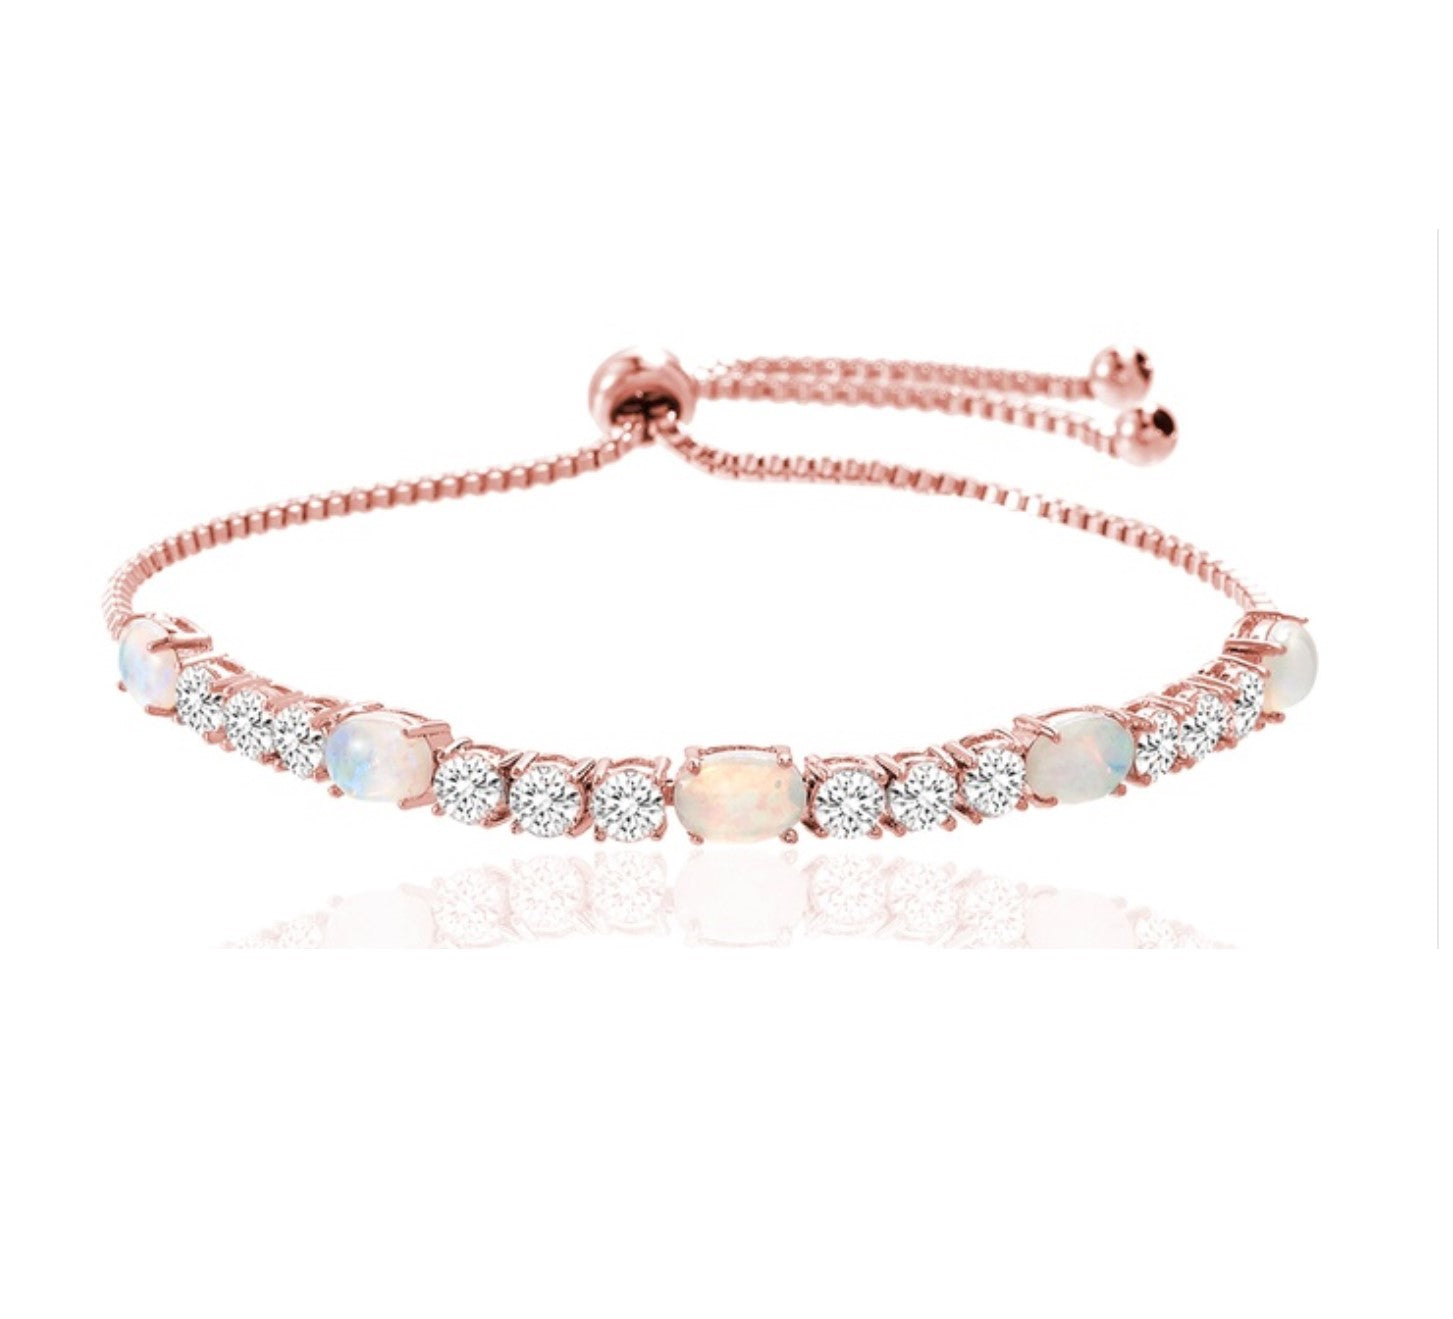 Fiery Opal Tennis Bracelet with Swarovski Element – MyKay Jewelry